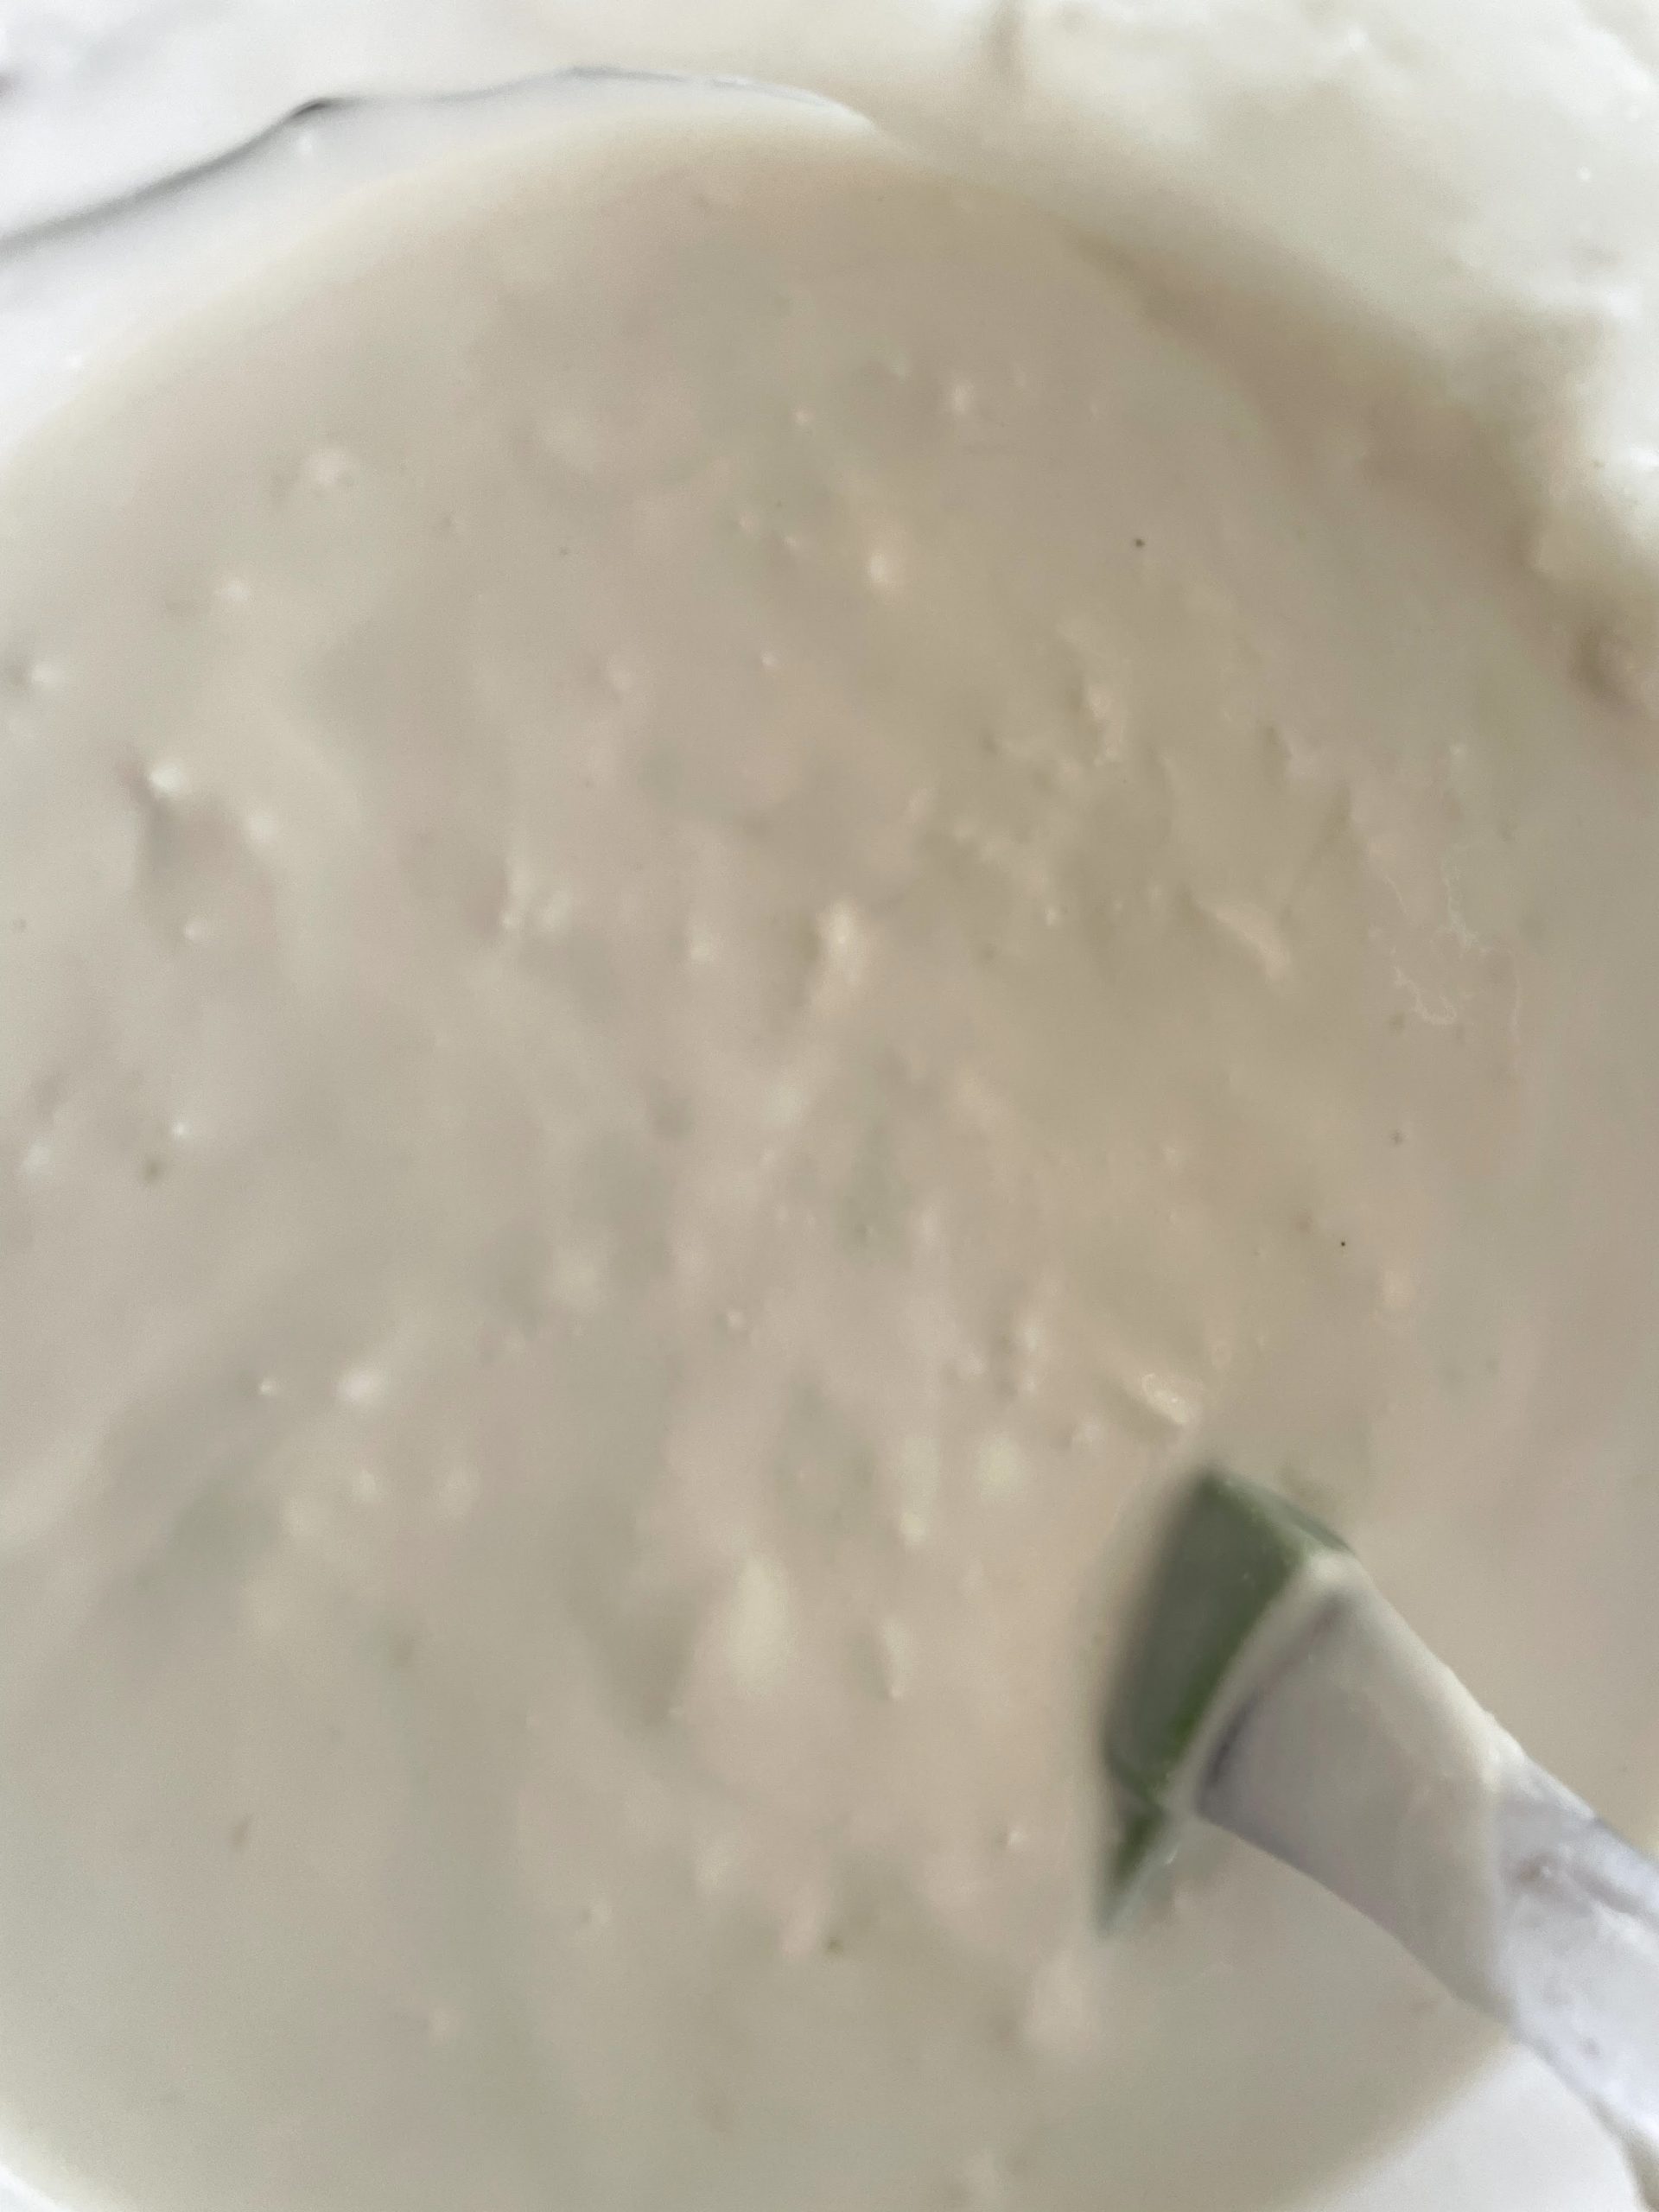 Stir coconut ice cream mixture until mixed.